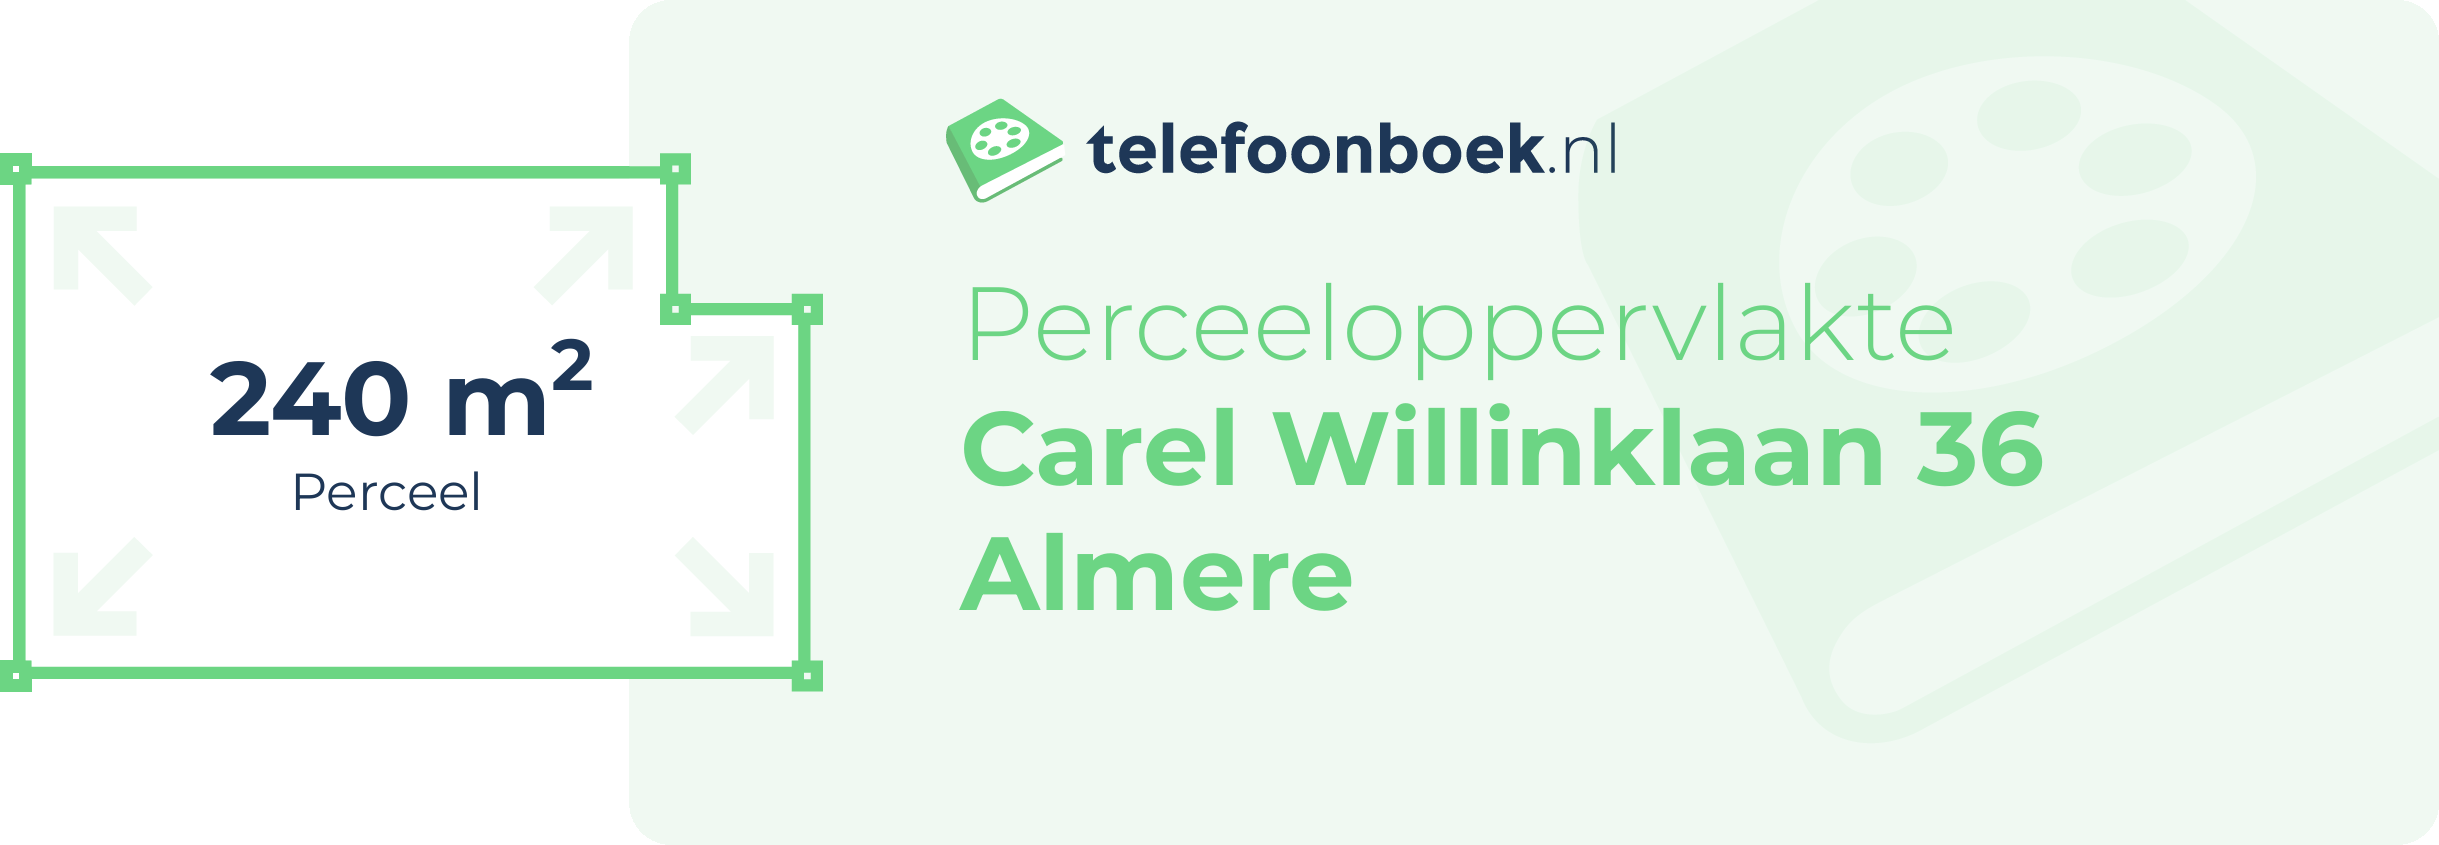 Perceeloppervlakte Carel Willinklaan 36 Almere